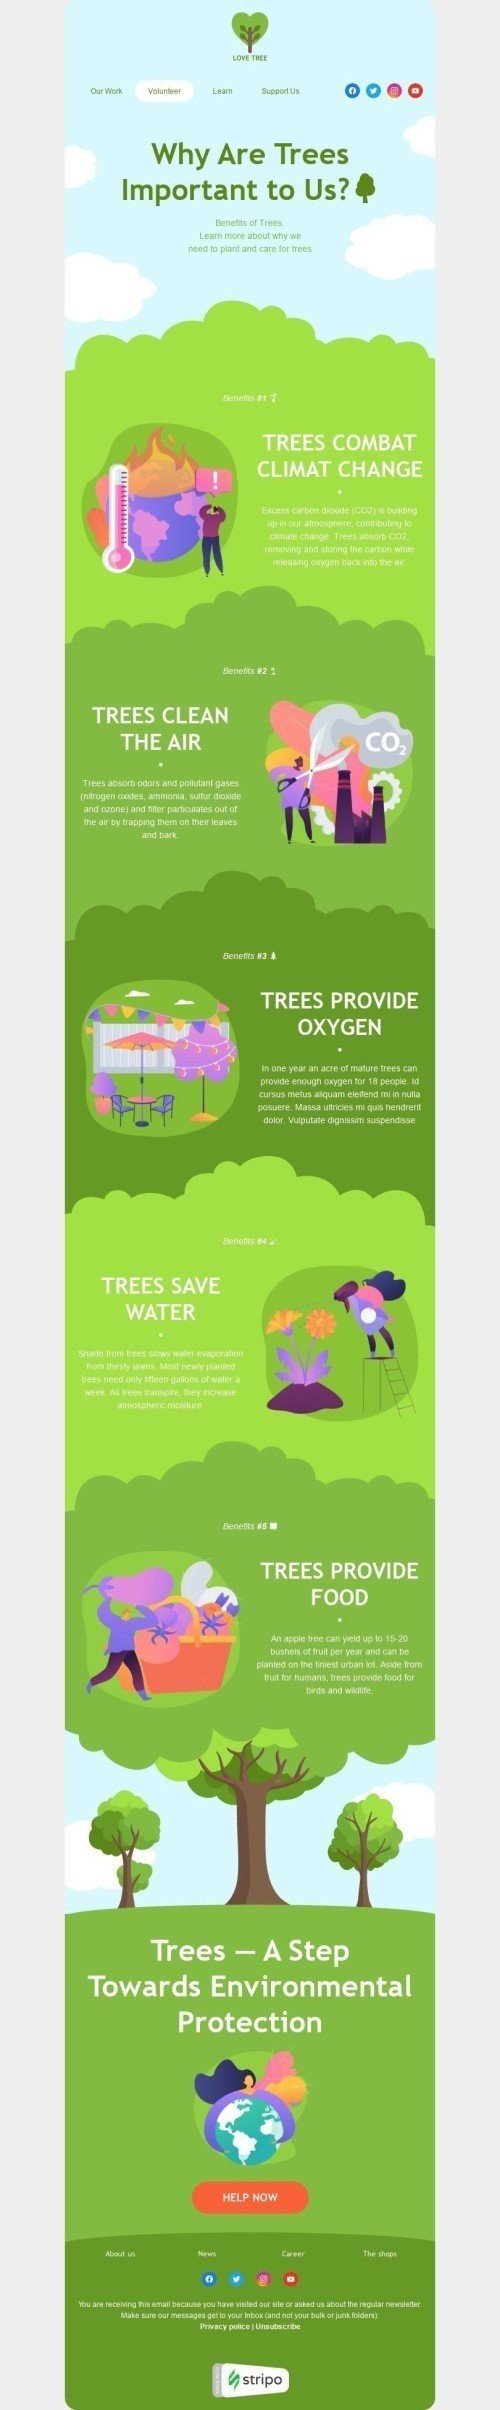 Шаблон письма к празднику Всемирный день окружающей среды «Деревья важны для нас» для индустрии «Фандрайзинг» дектопный вид